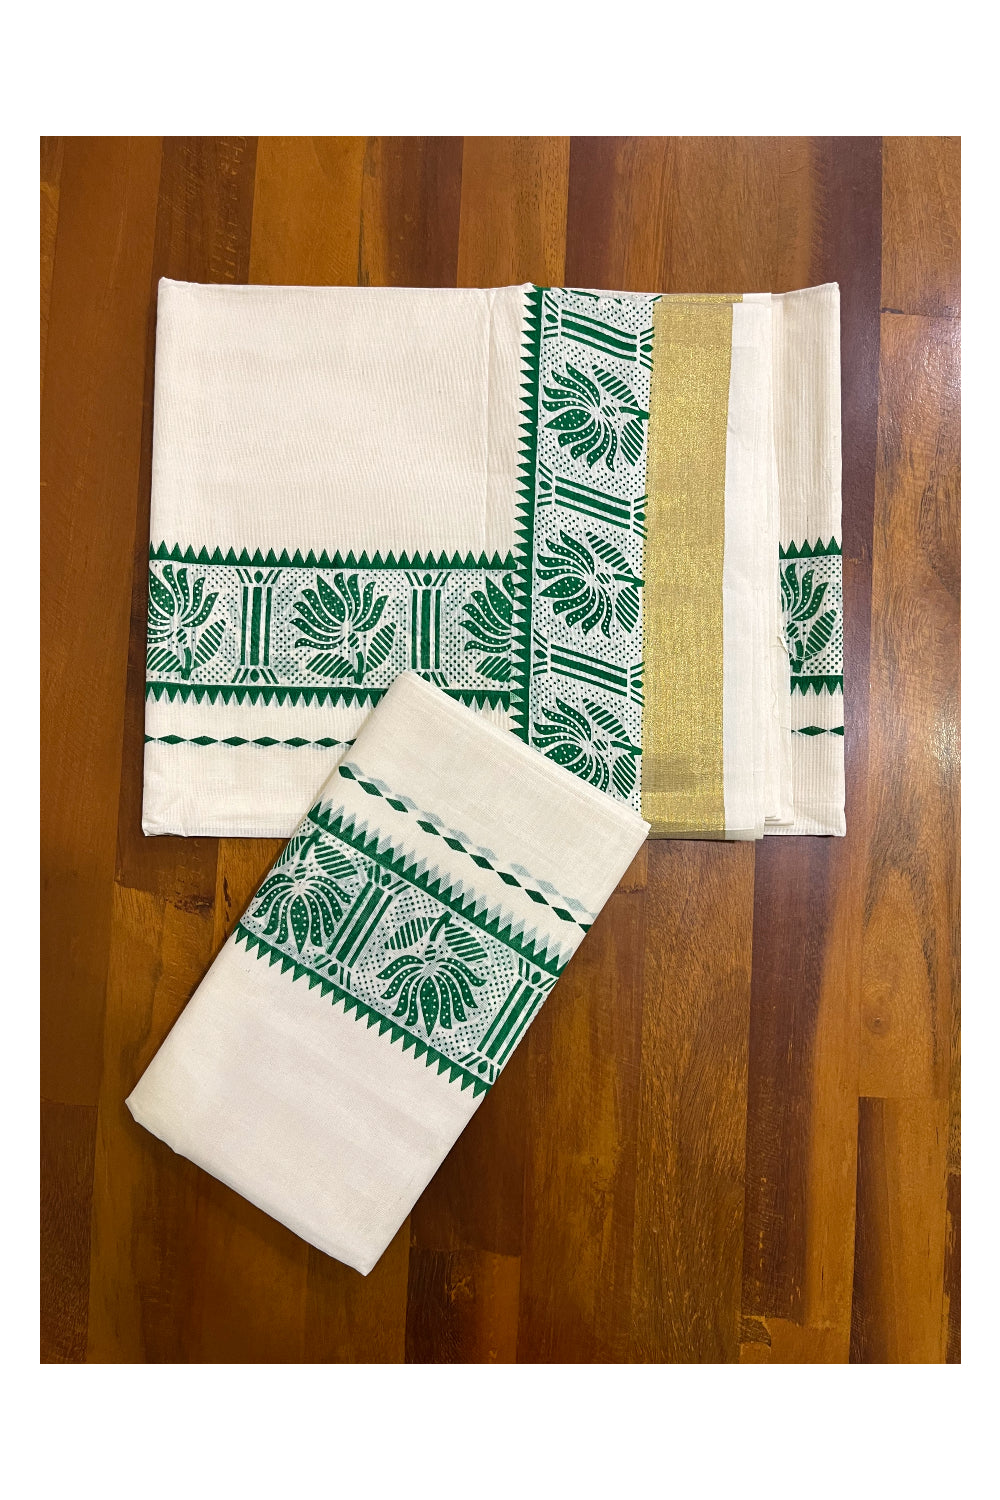 Kerala Cotton Single Set Mundu (Mundum Neriyathum) with Green Block Prints and Kasavu Border - 2.80Mtrs